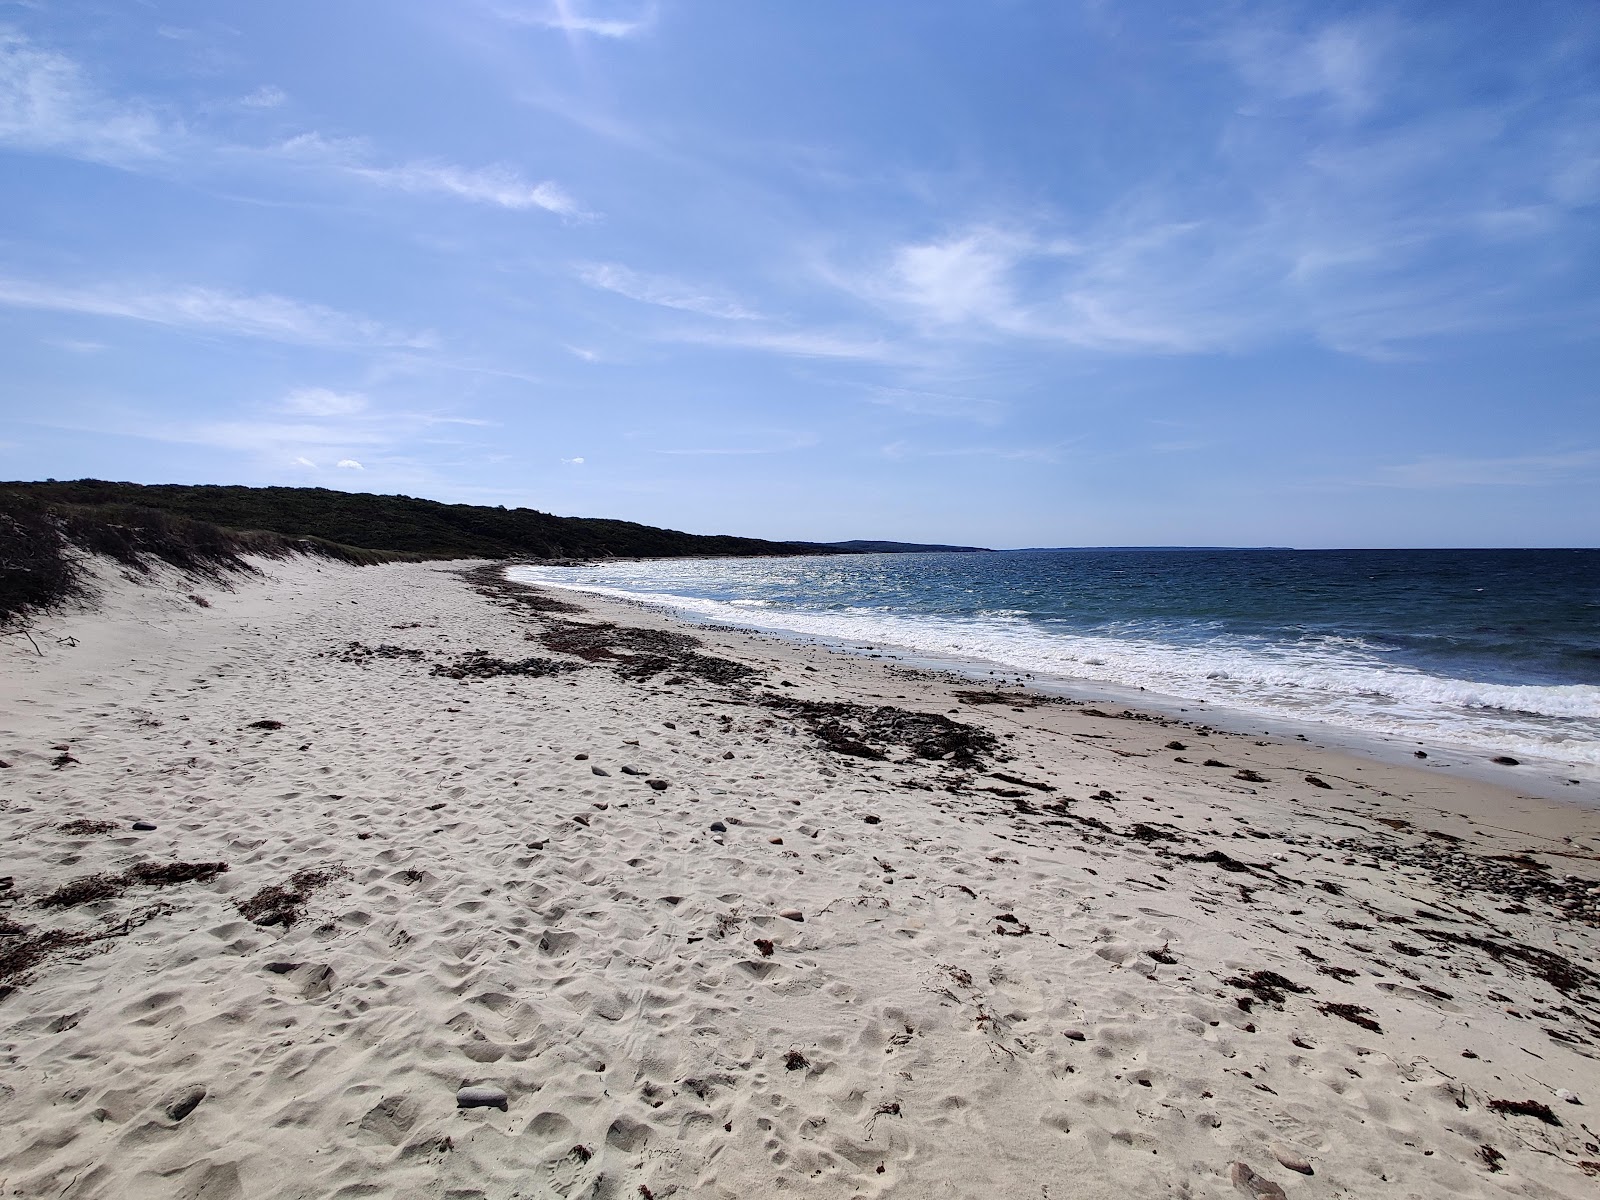 Fotografie cu North Shore Beach cu o suprafață de nisip strălucitor